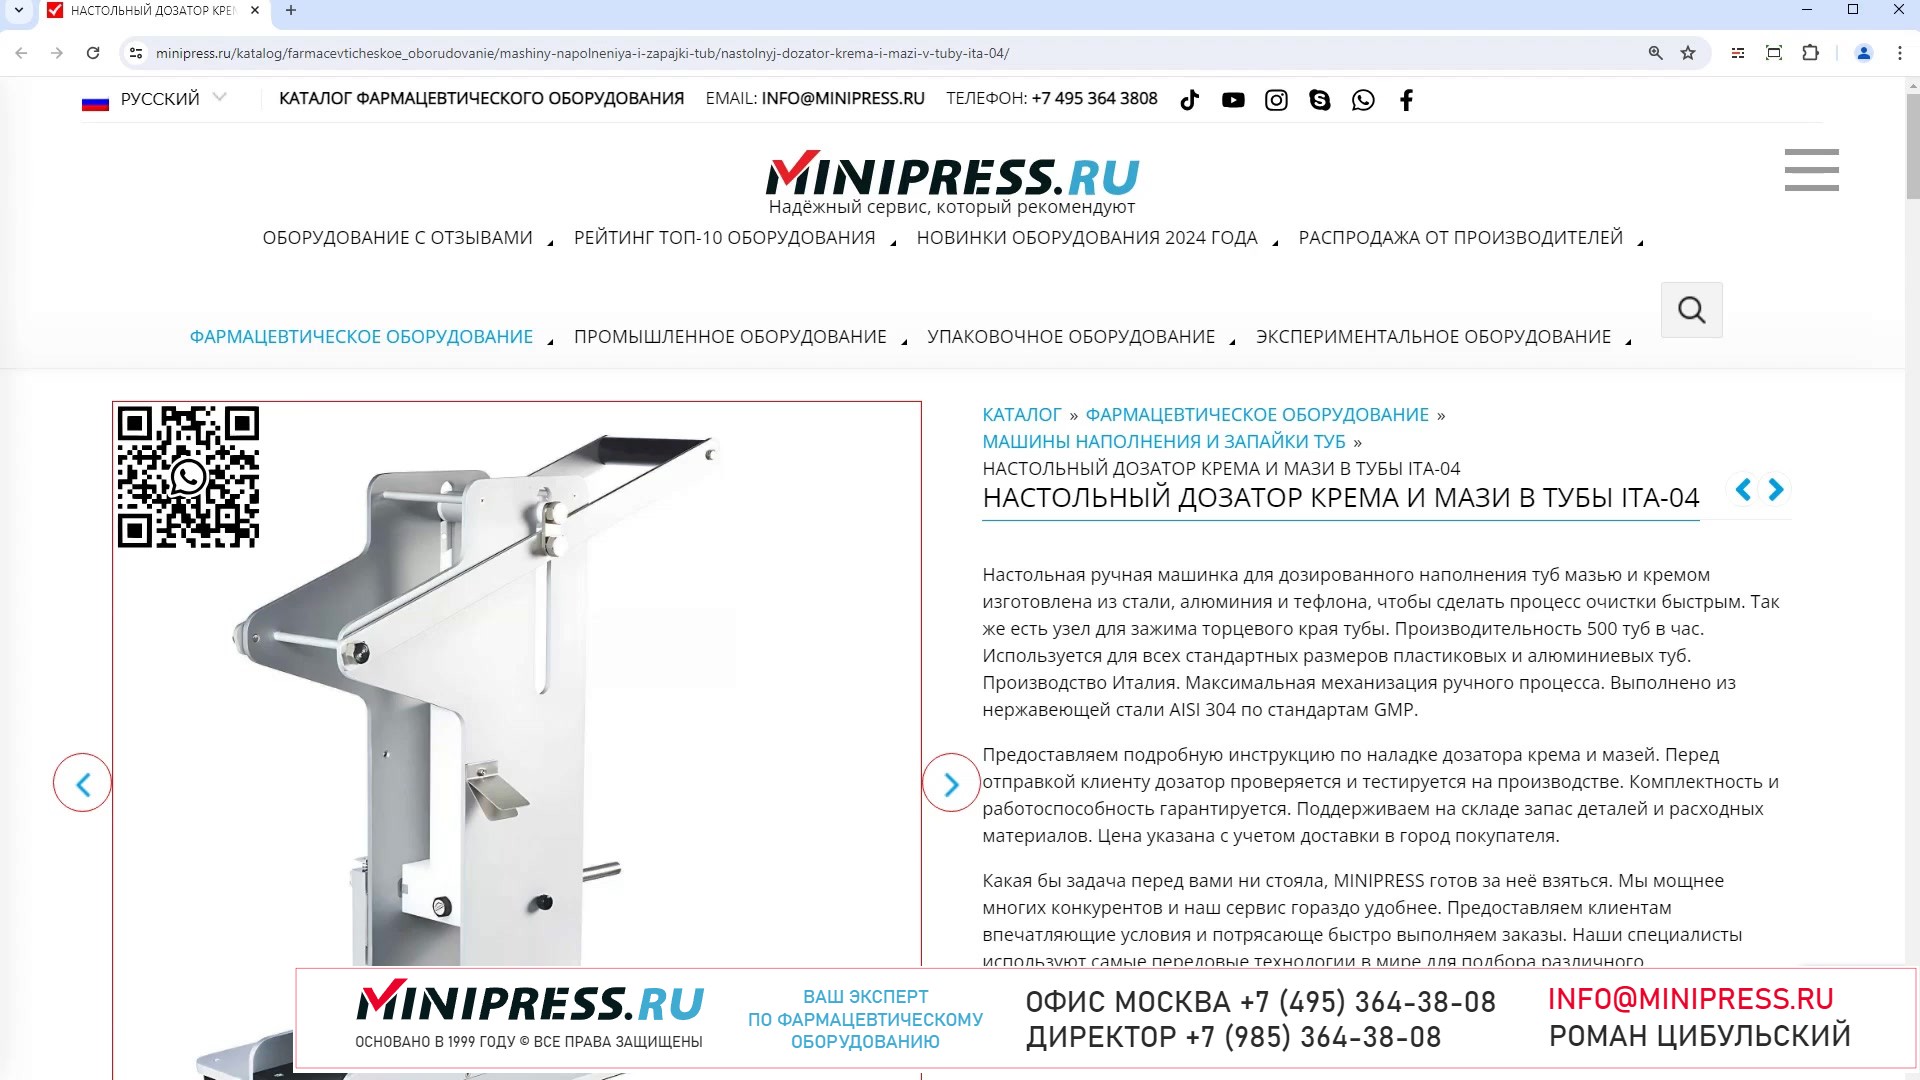 Minipress.ru Настольный дозатор крема и мази в тубы ITA-04